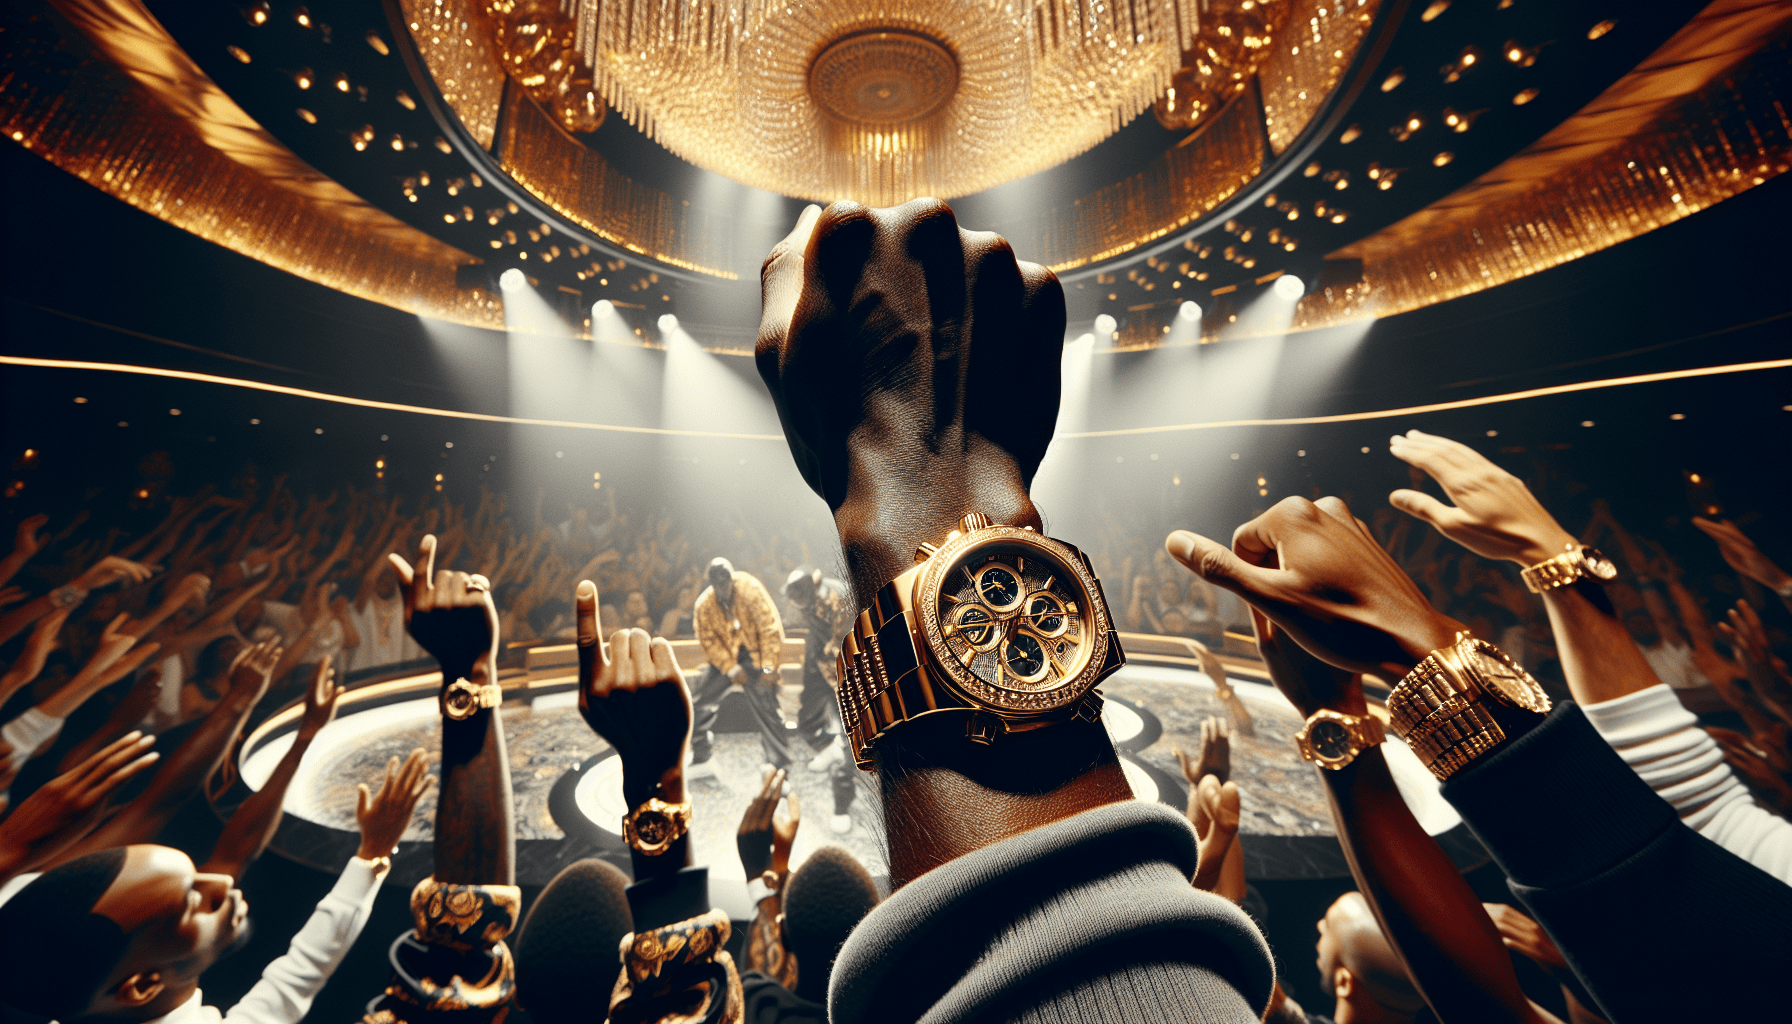 découvrez l'influence des montres de luxe en tant que symbole de réussite dans le monde du rap français. analyse de la relation entre le luxe et le succès dans la culture hip-hop.